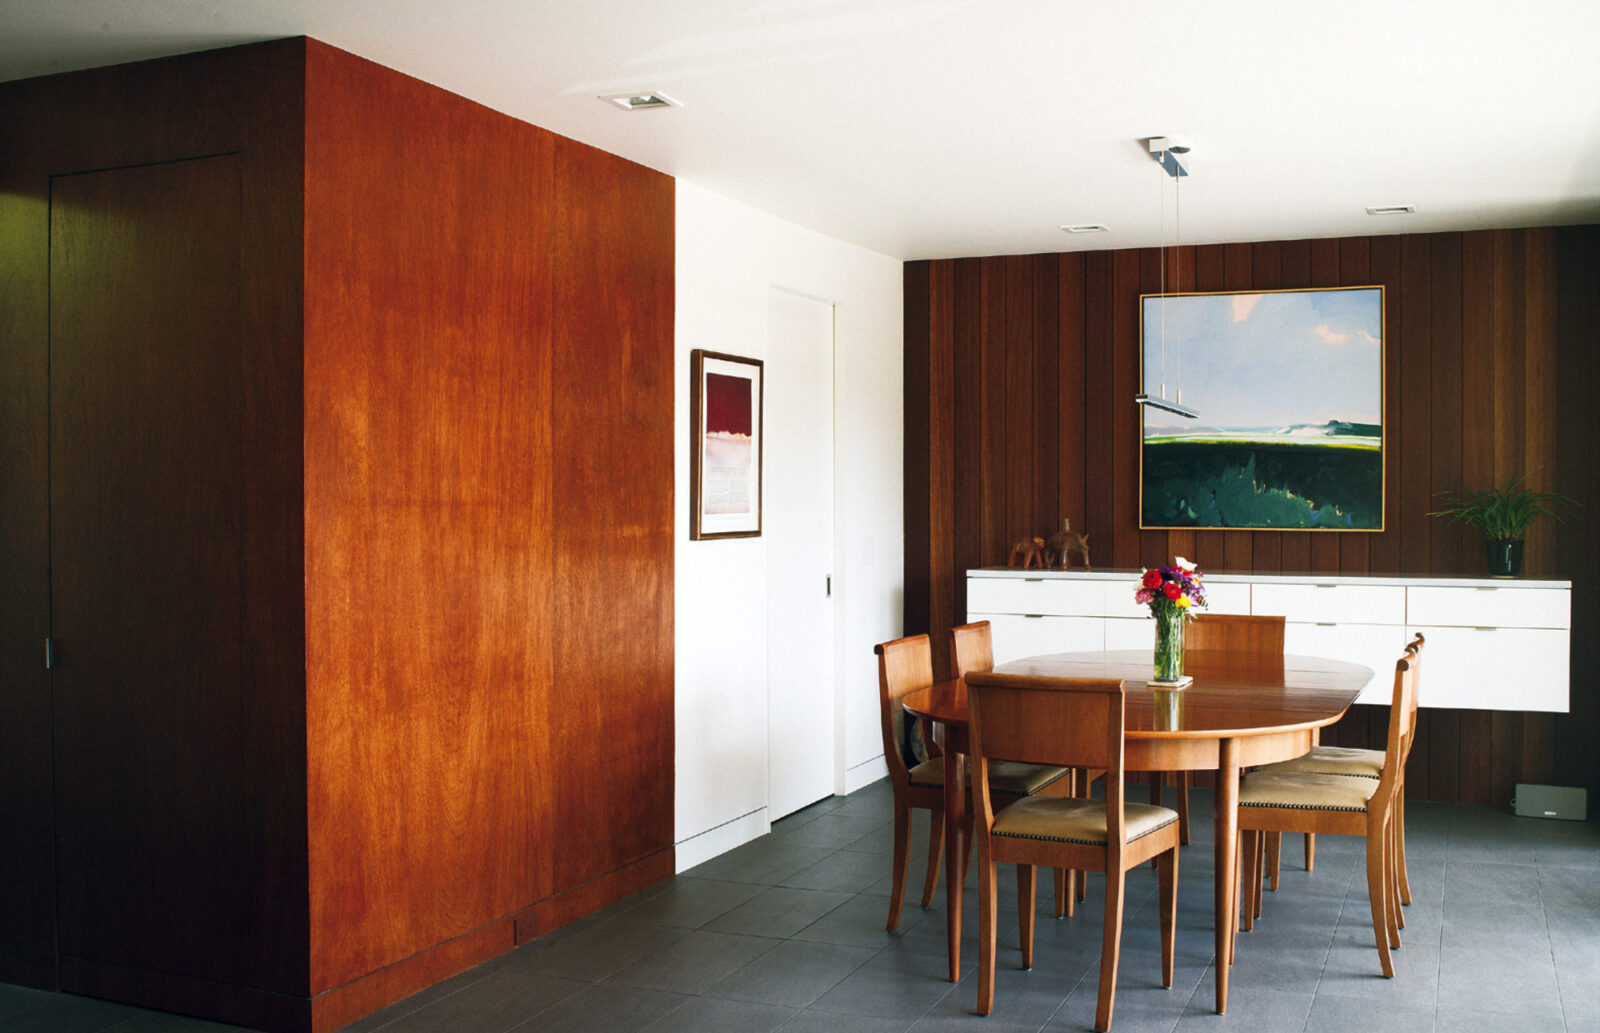 四角い部屋に､丸みを帯びた家具を置く、壁は「KAYU-BATU」というインドネシアの木材